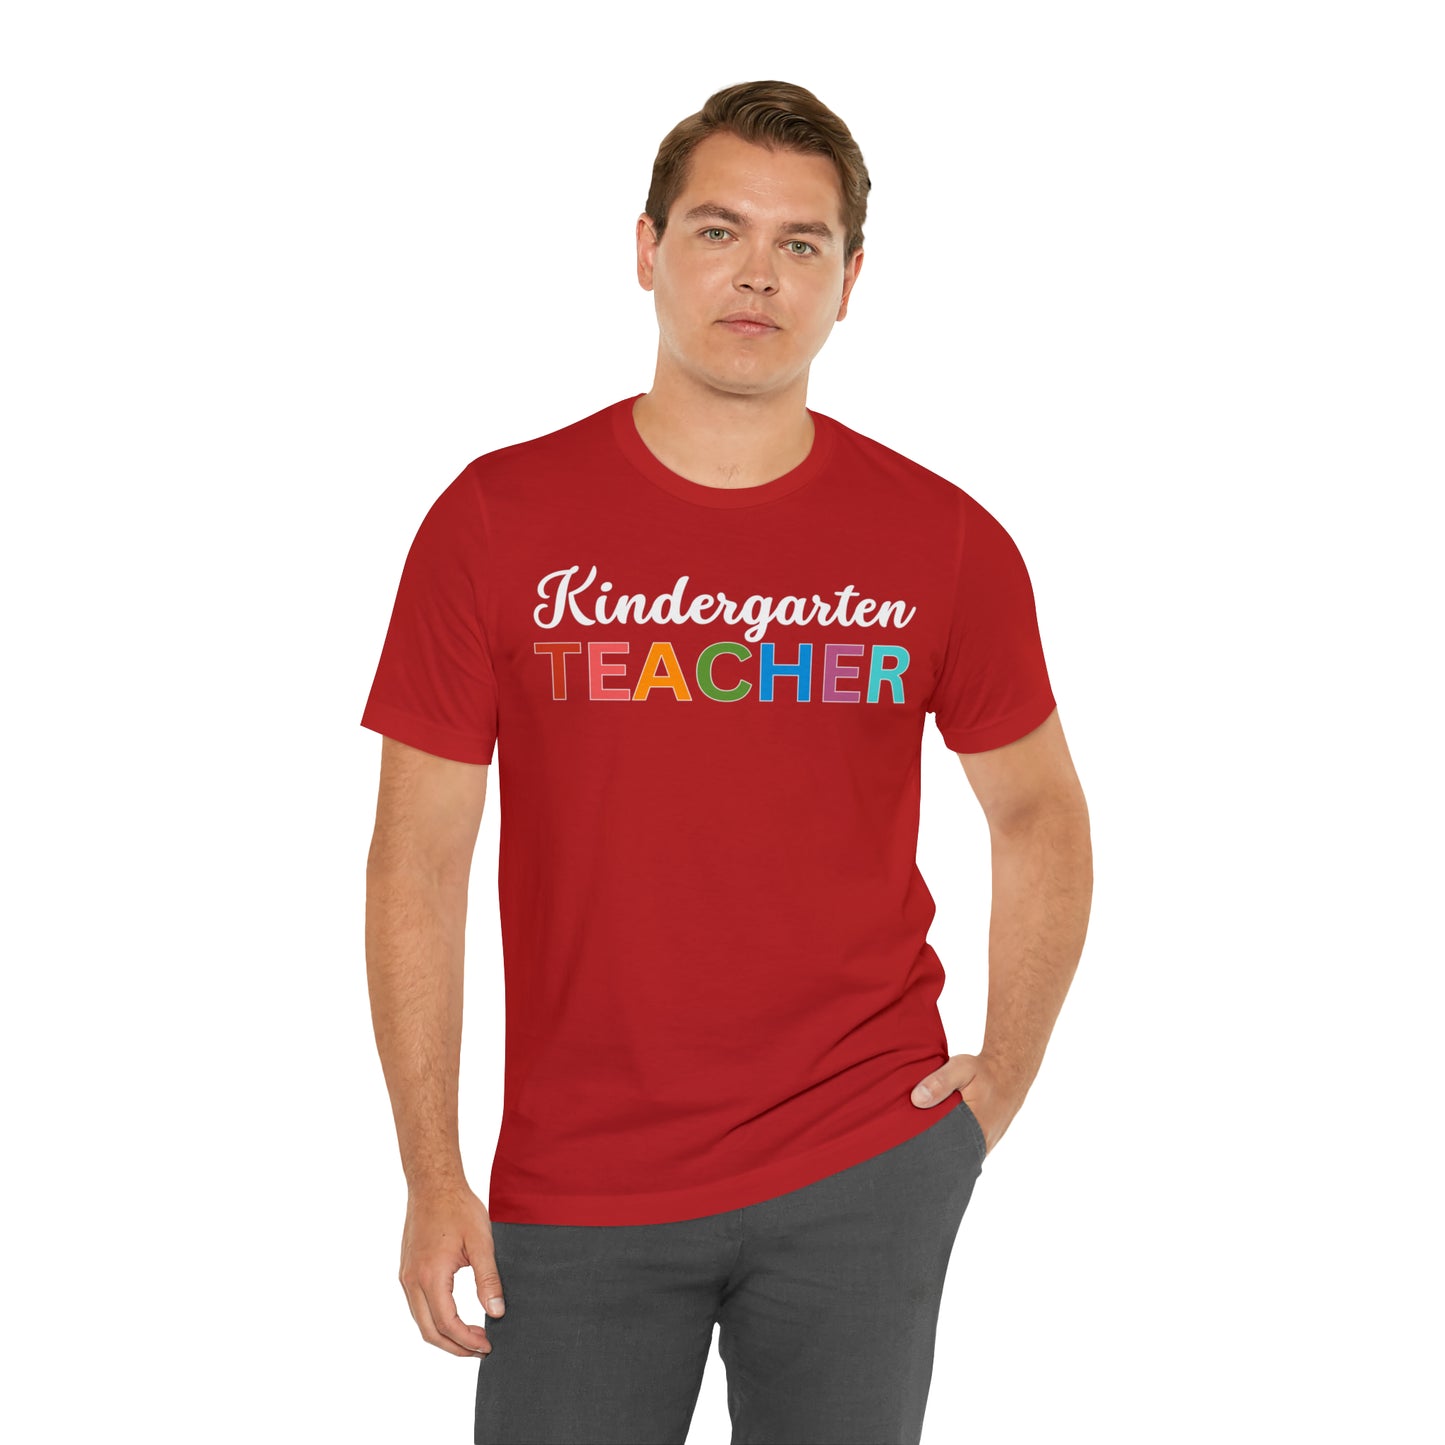 Kindergarten Teacher Shirt, Teacher Shirt, Teacher Appreciation Gift for Teachers